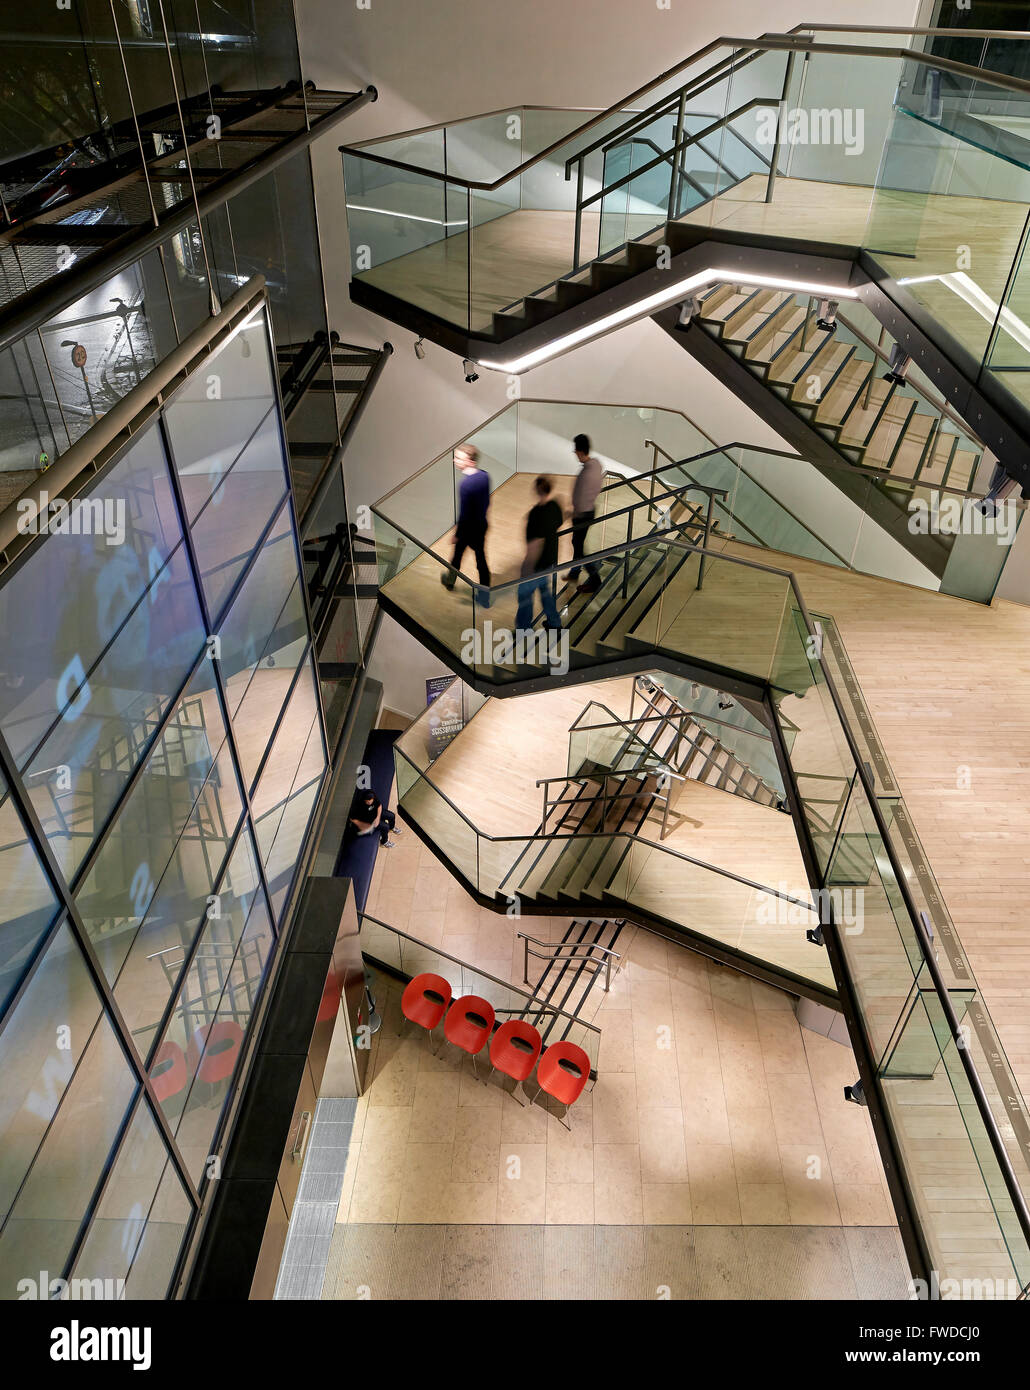 Vue surélevée en plein hall d'accueil avec escalier et les visiteurs. Saddler's Wells, Londres, Royaume-Uni. Architecte : De Matos R Banque D'Images